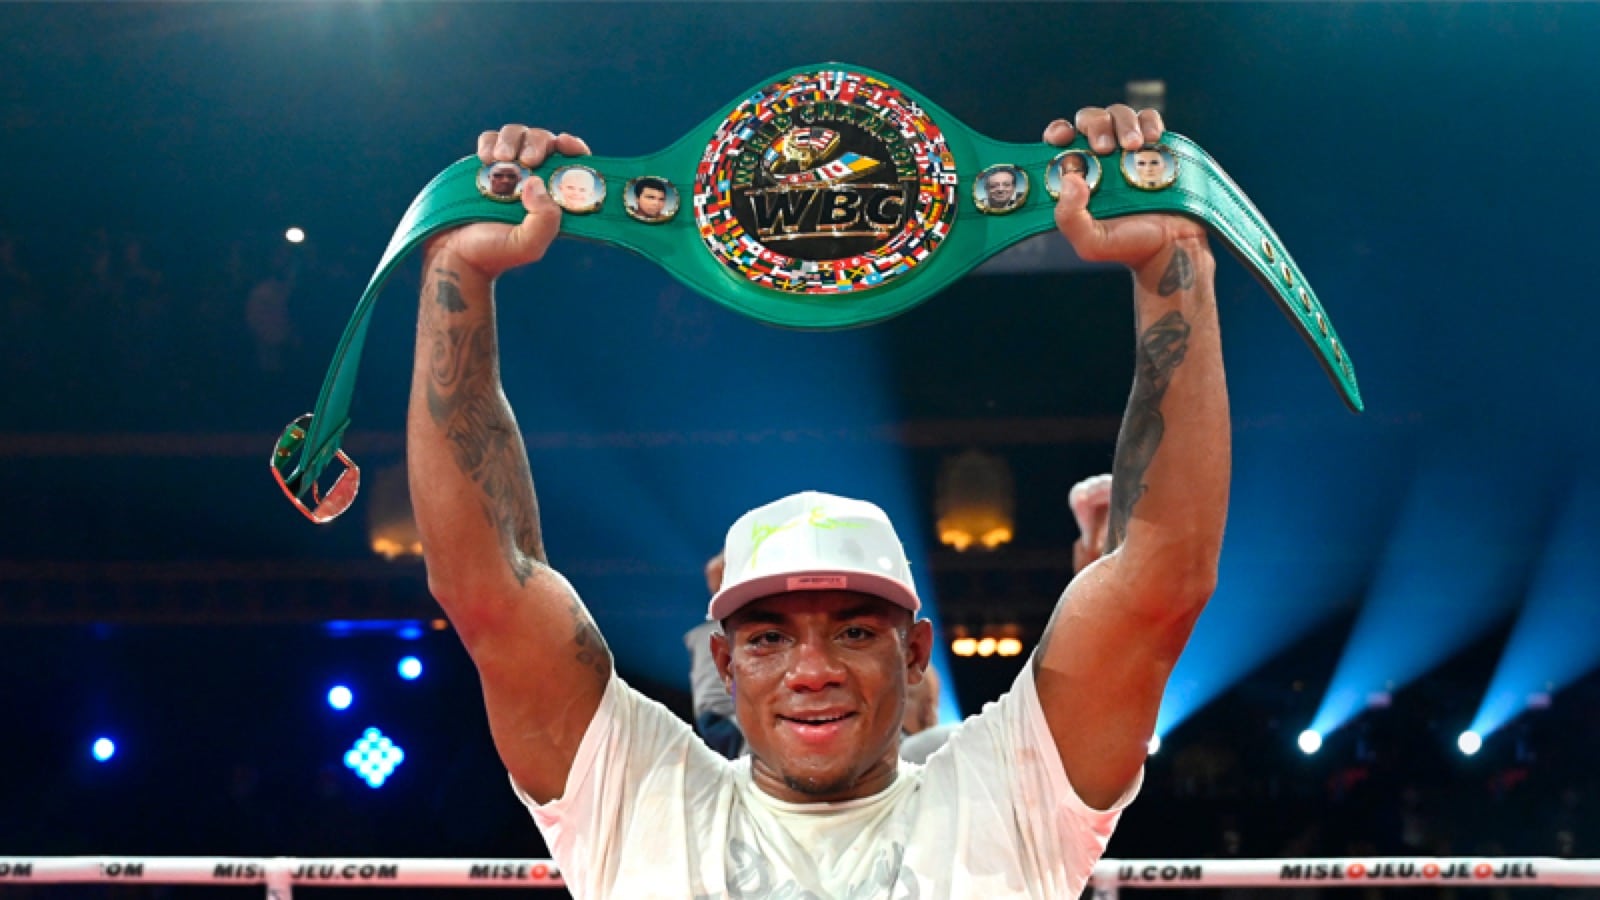 Oscar Rivas boxing image / photo